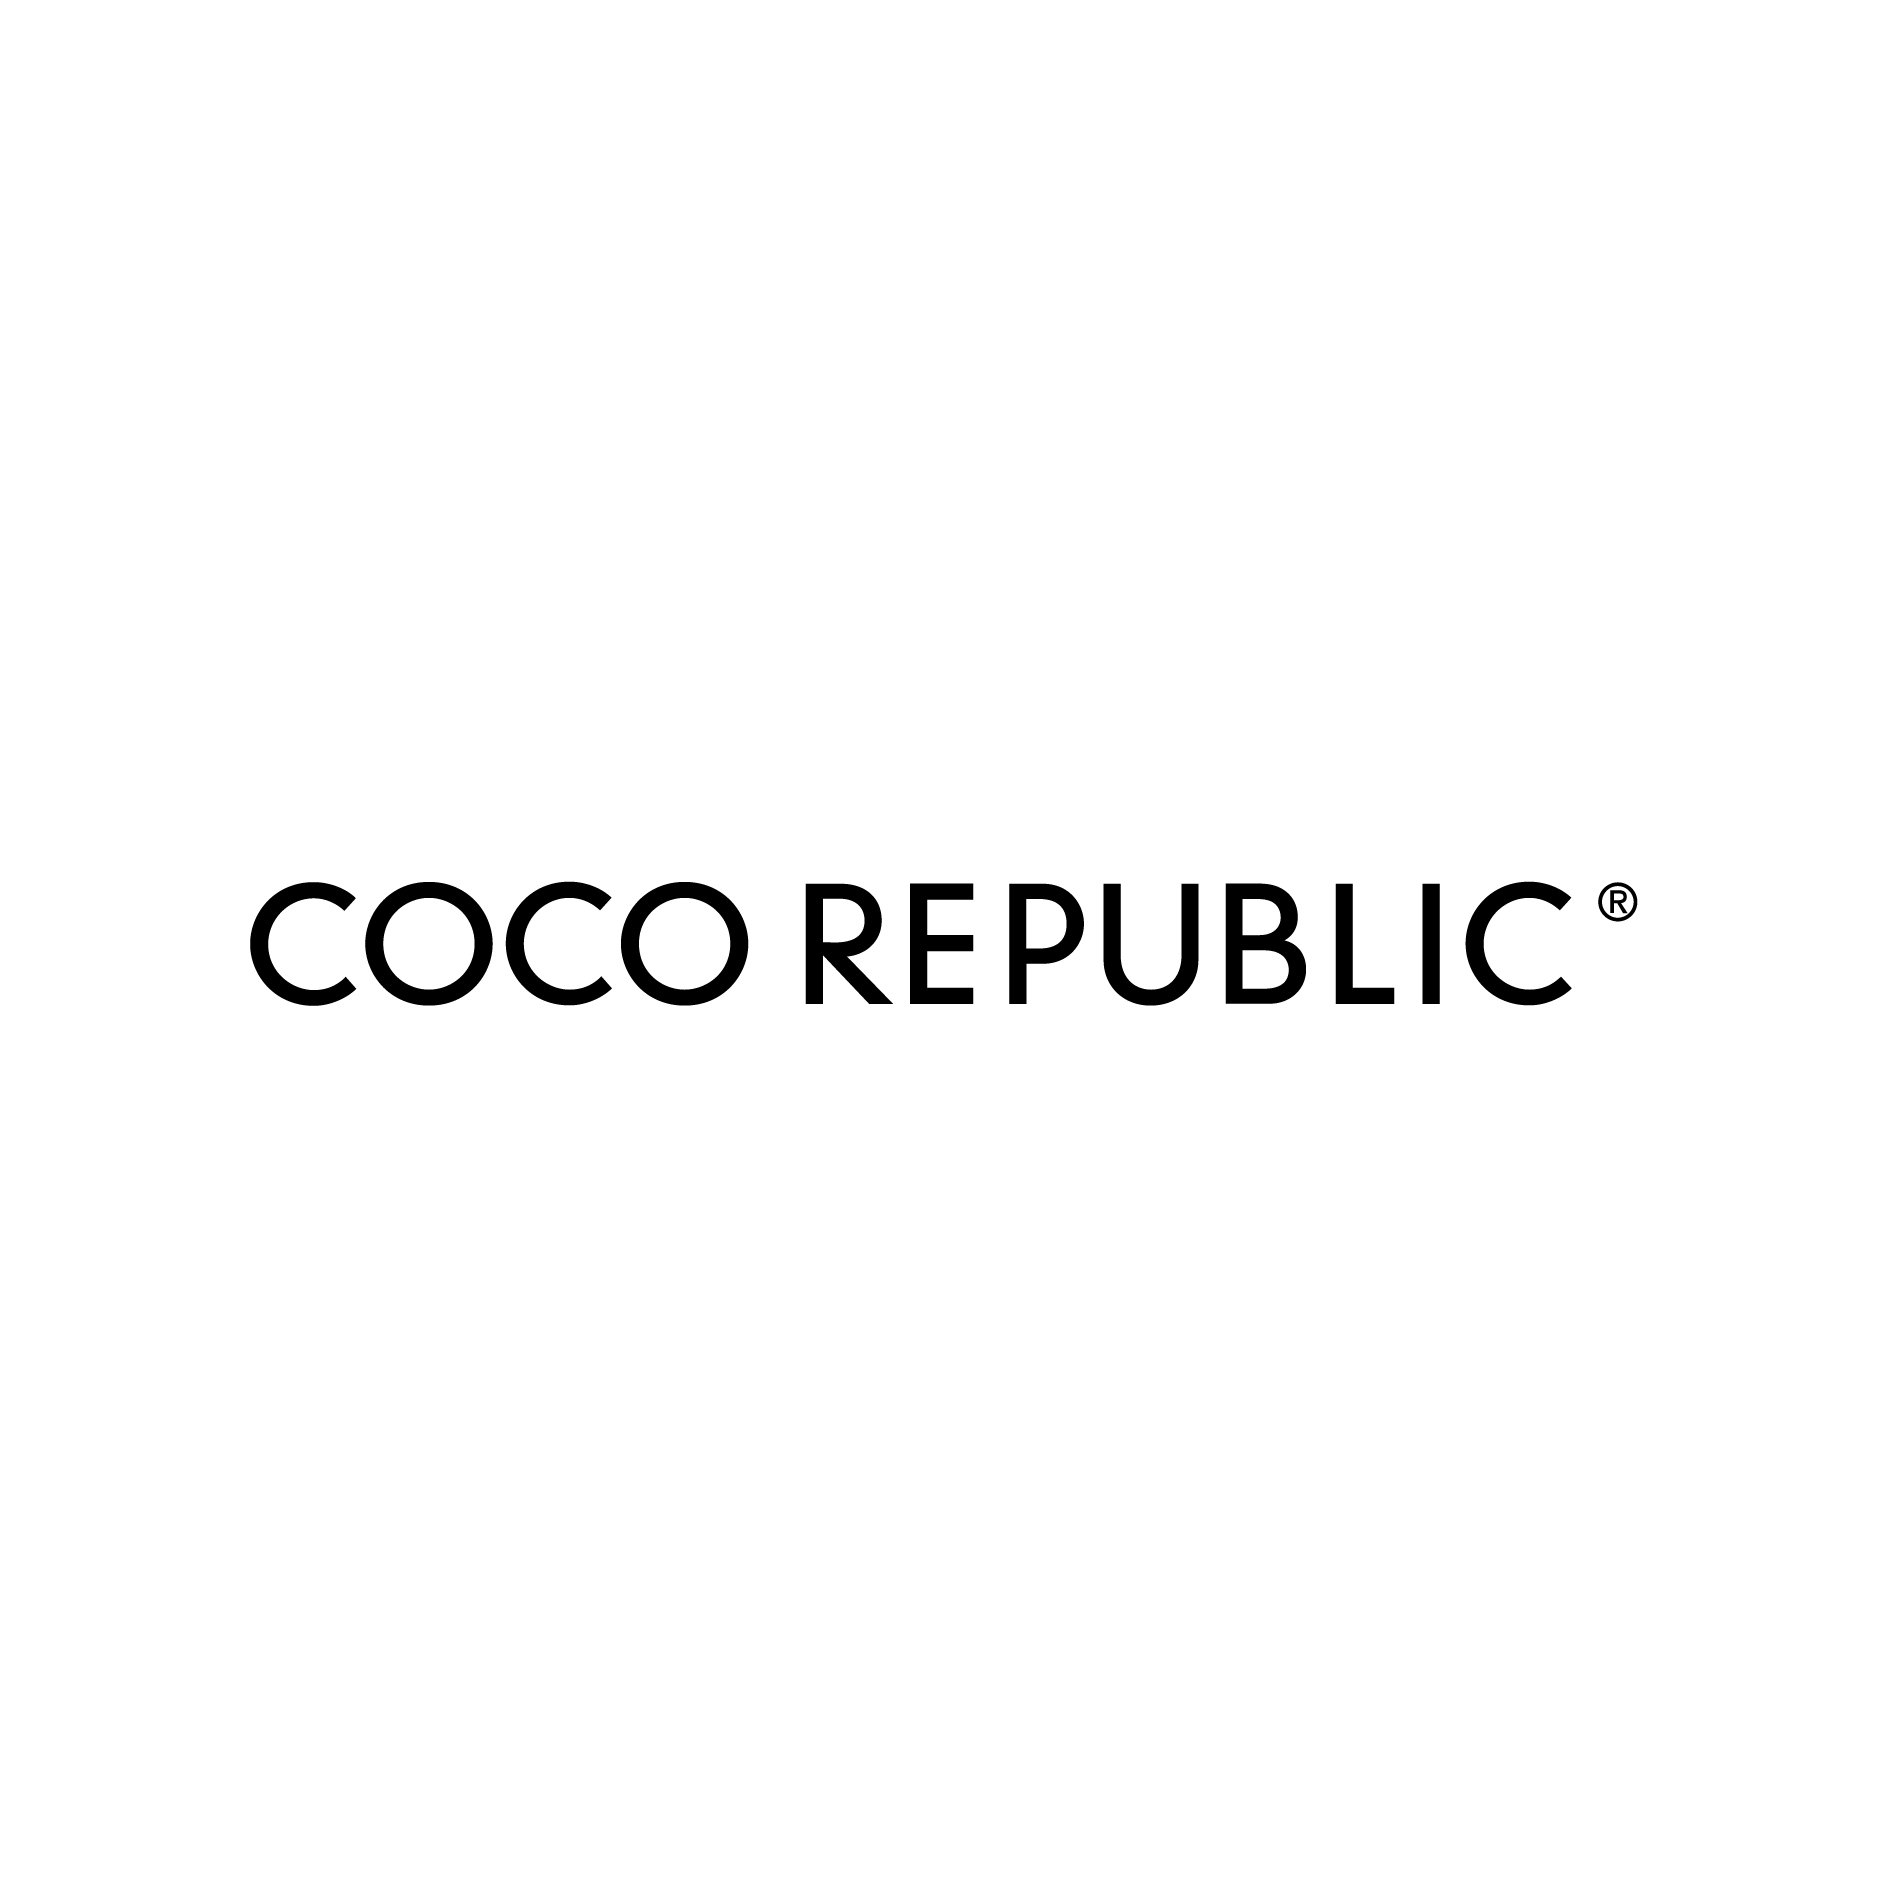 Coco Republic